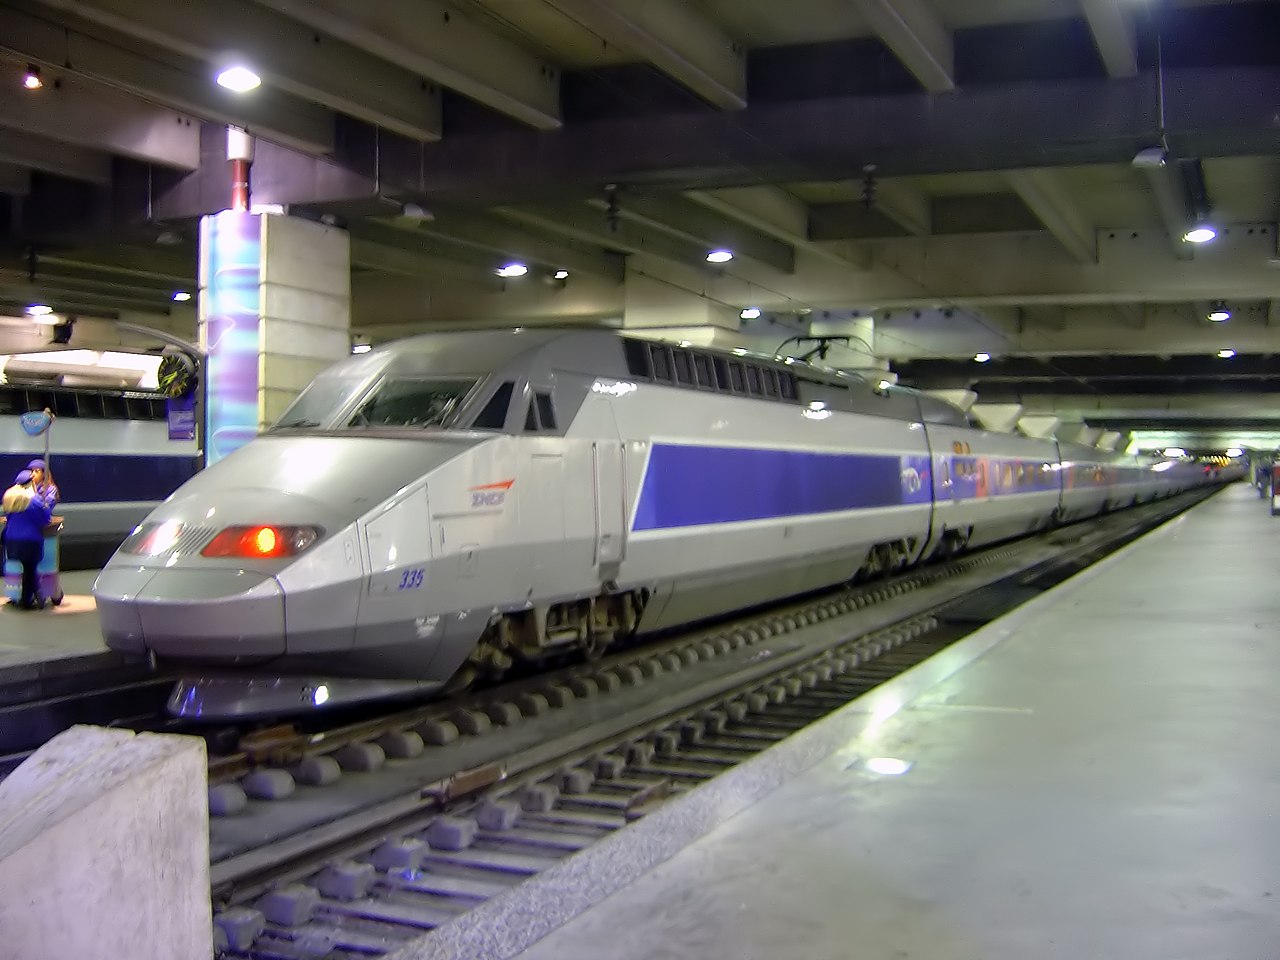 1280px-TGV_train_inside_Gare_Montparnasse_DSC08895.jpg